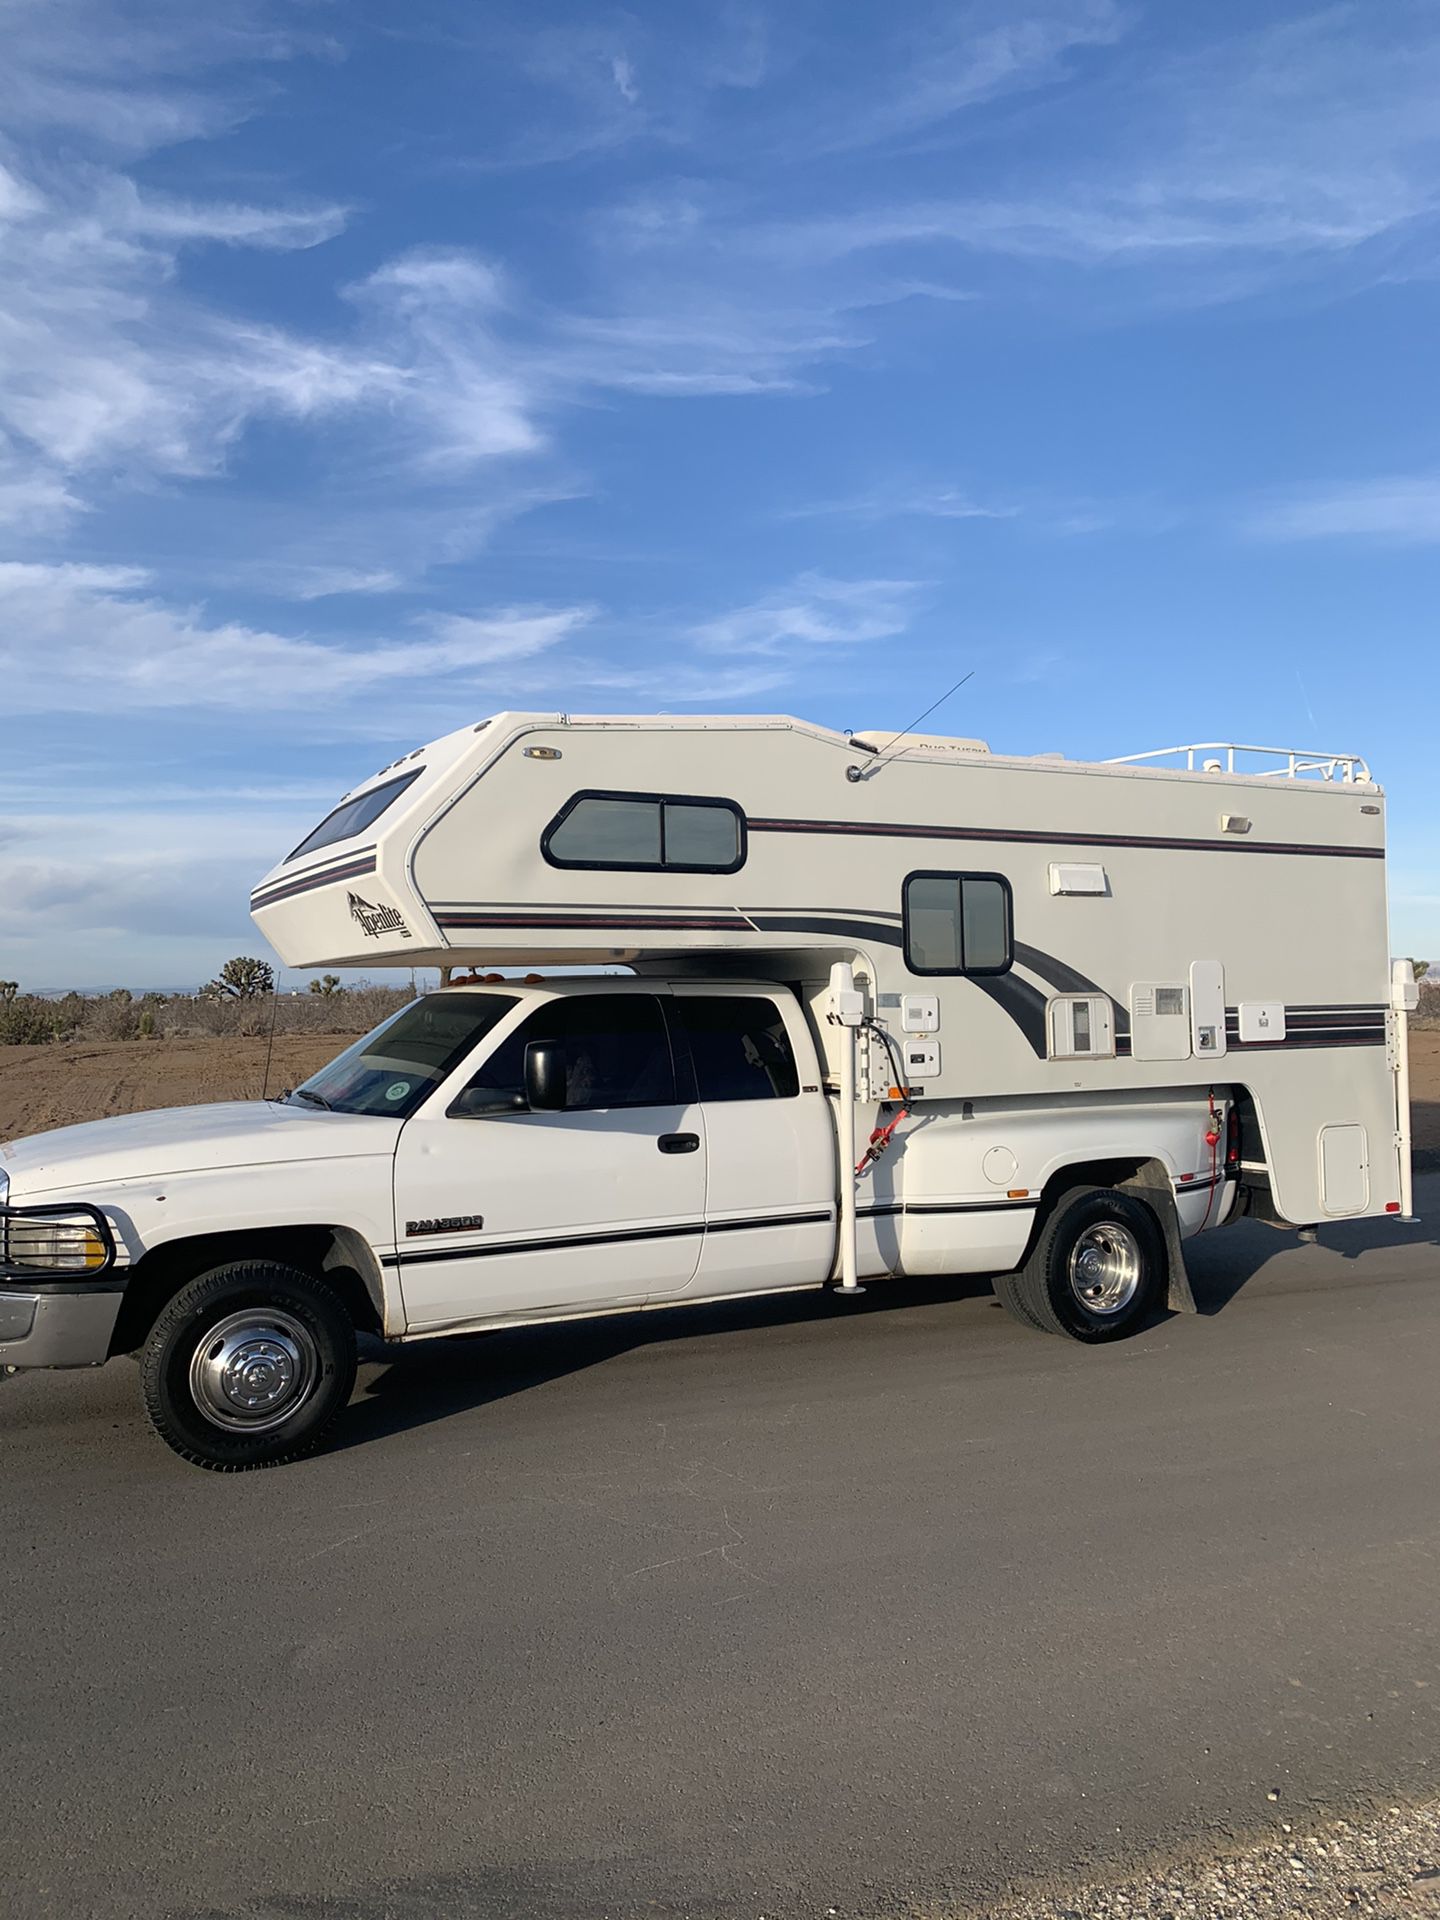 Alpenlite truck camper